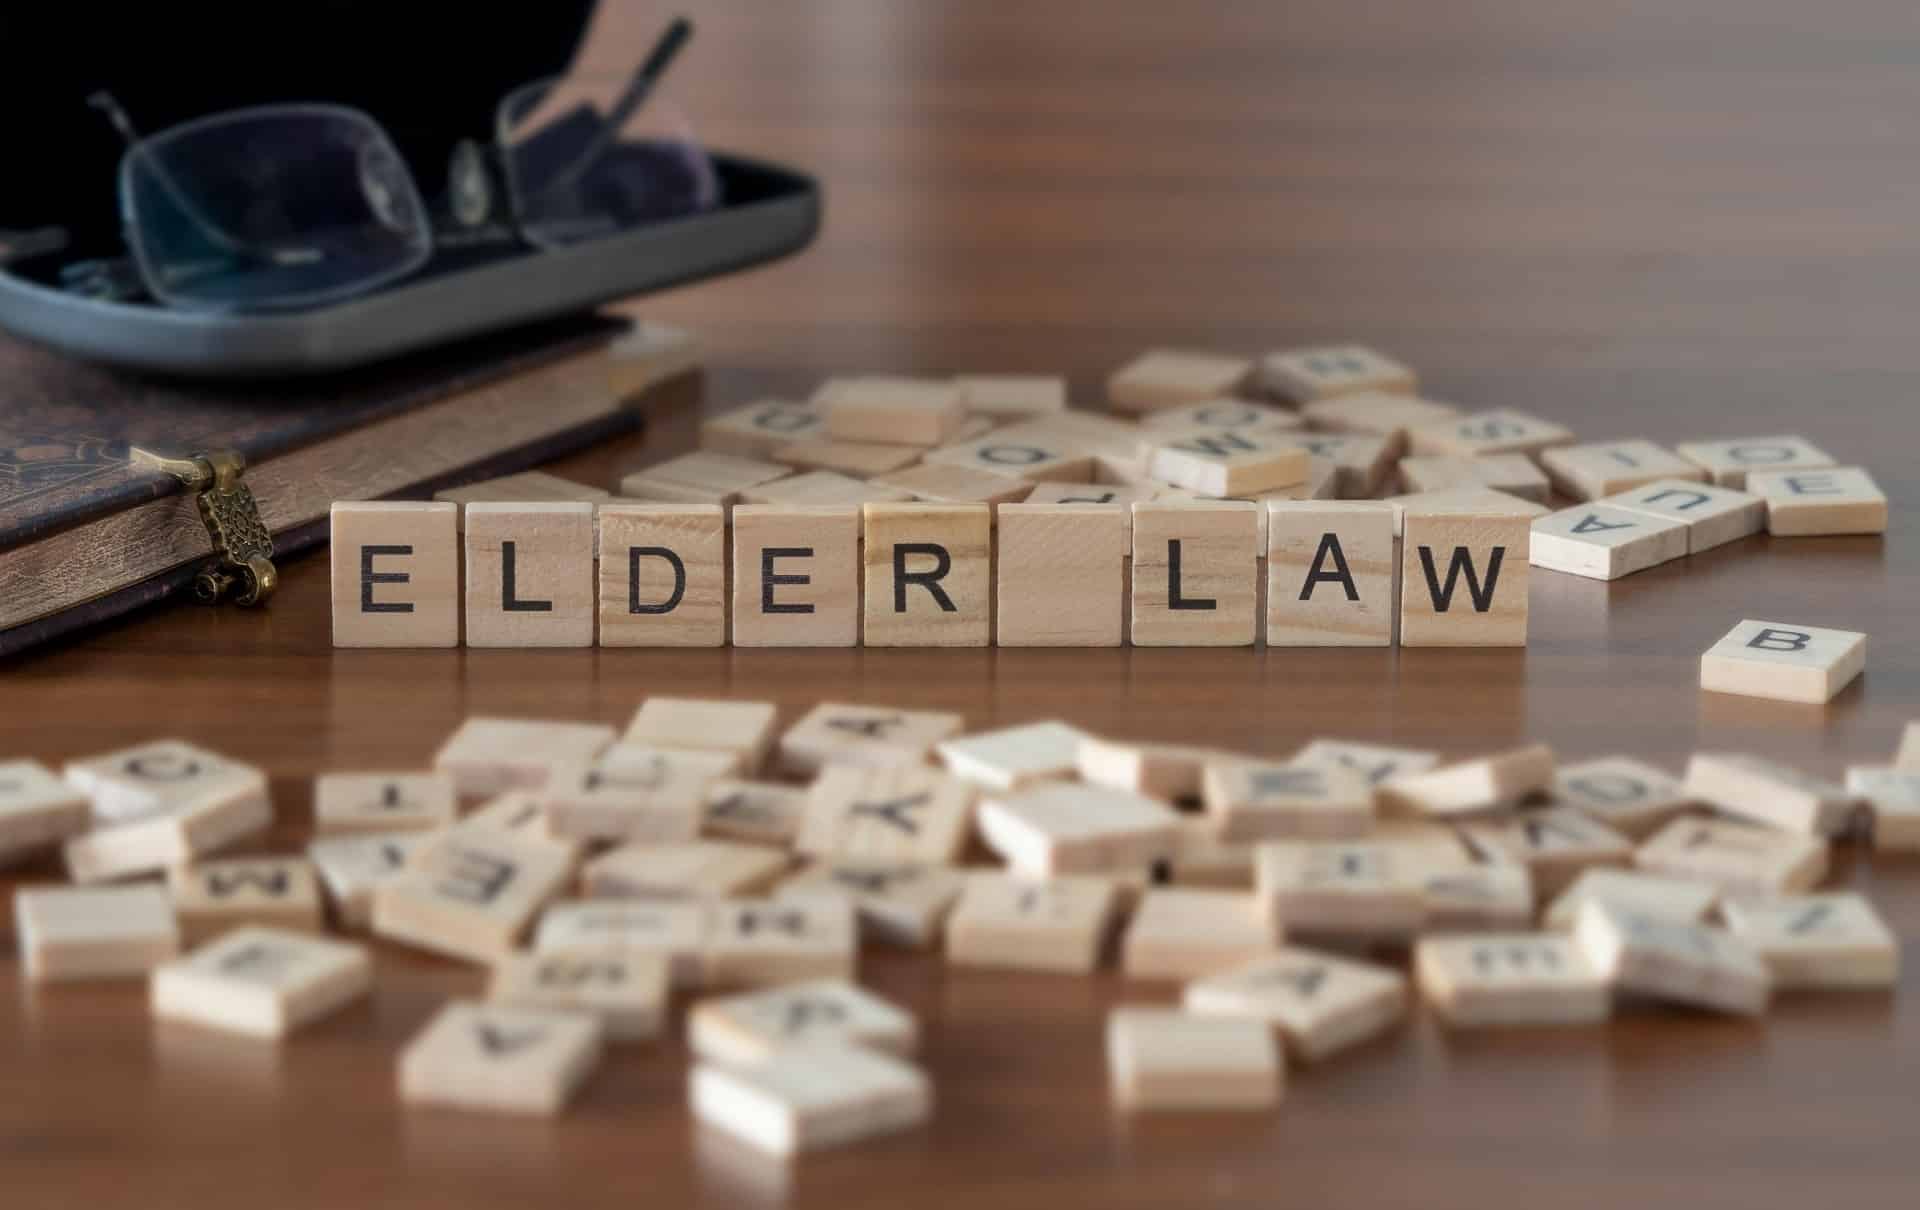 Elder Law Spelled Out in Scrabble Tiles | Elder Law Firm | Legacy Law Group